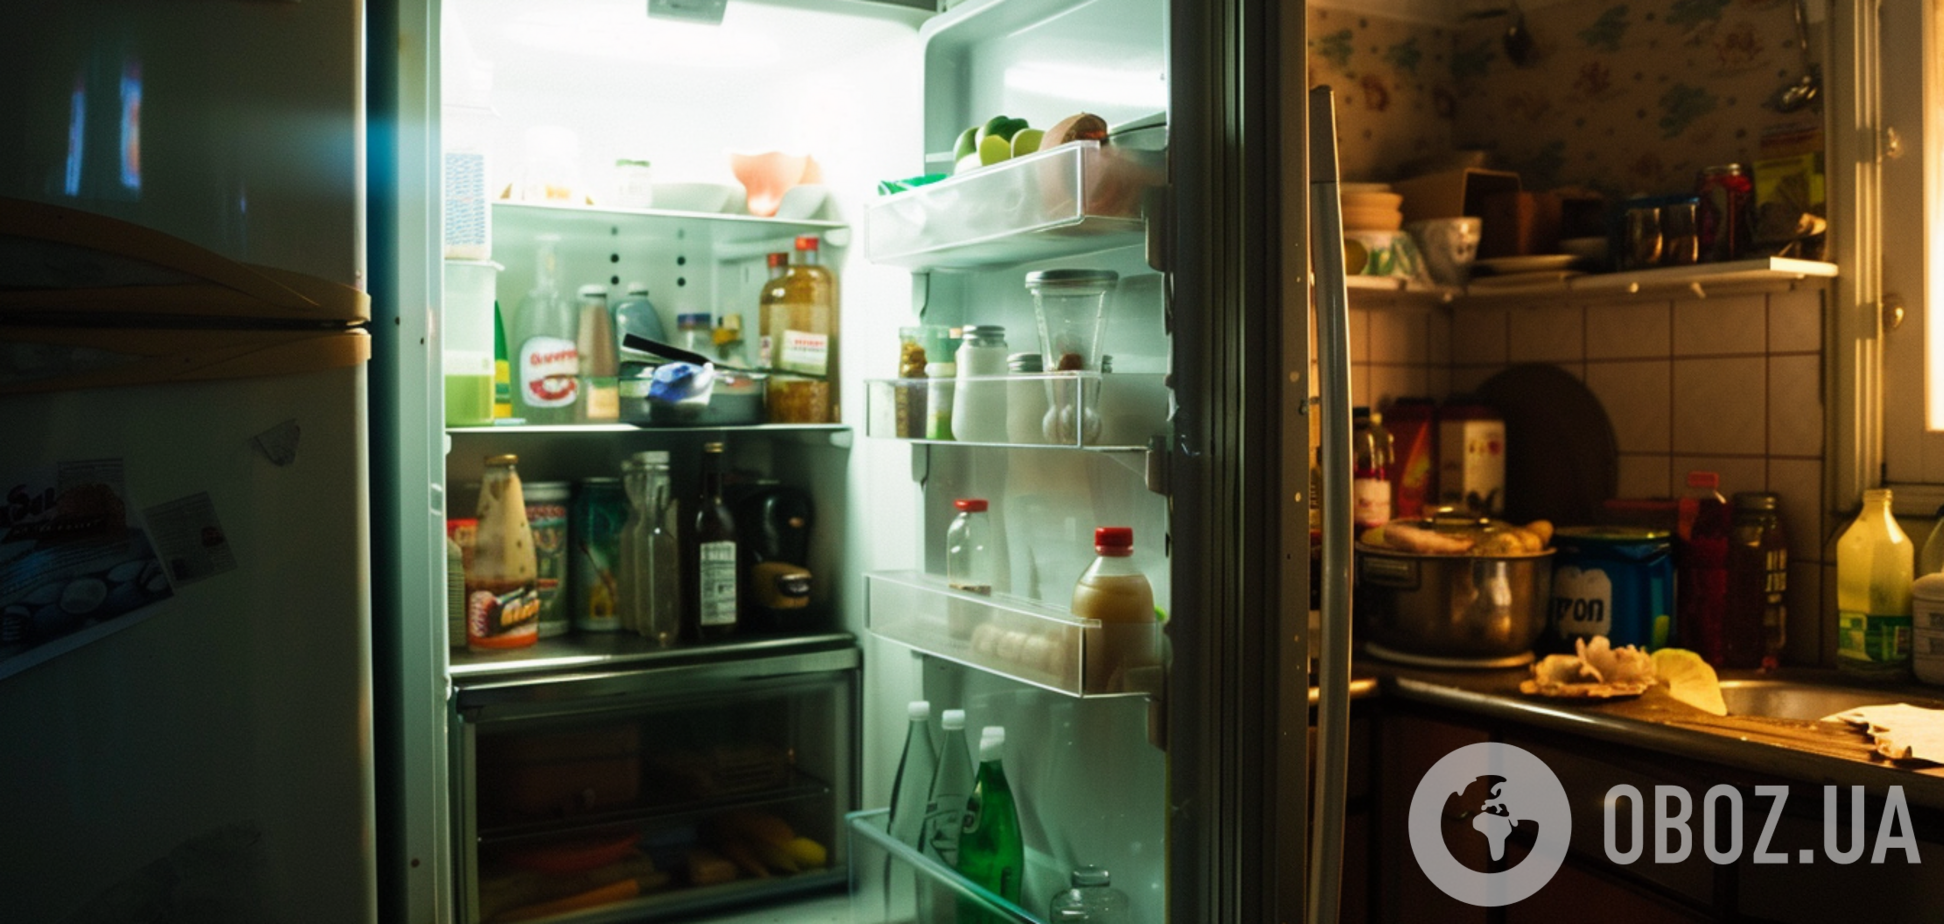 Як правильно мити холодильник, щоб уникнути неприємного запаху: поради